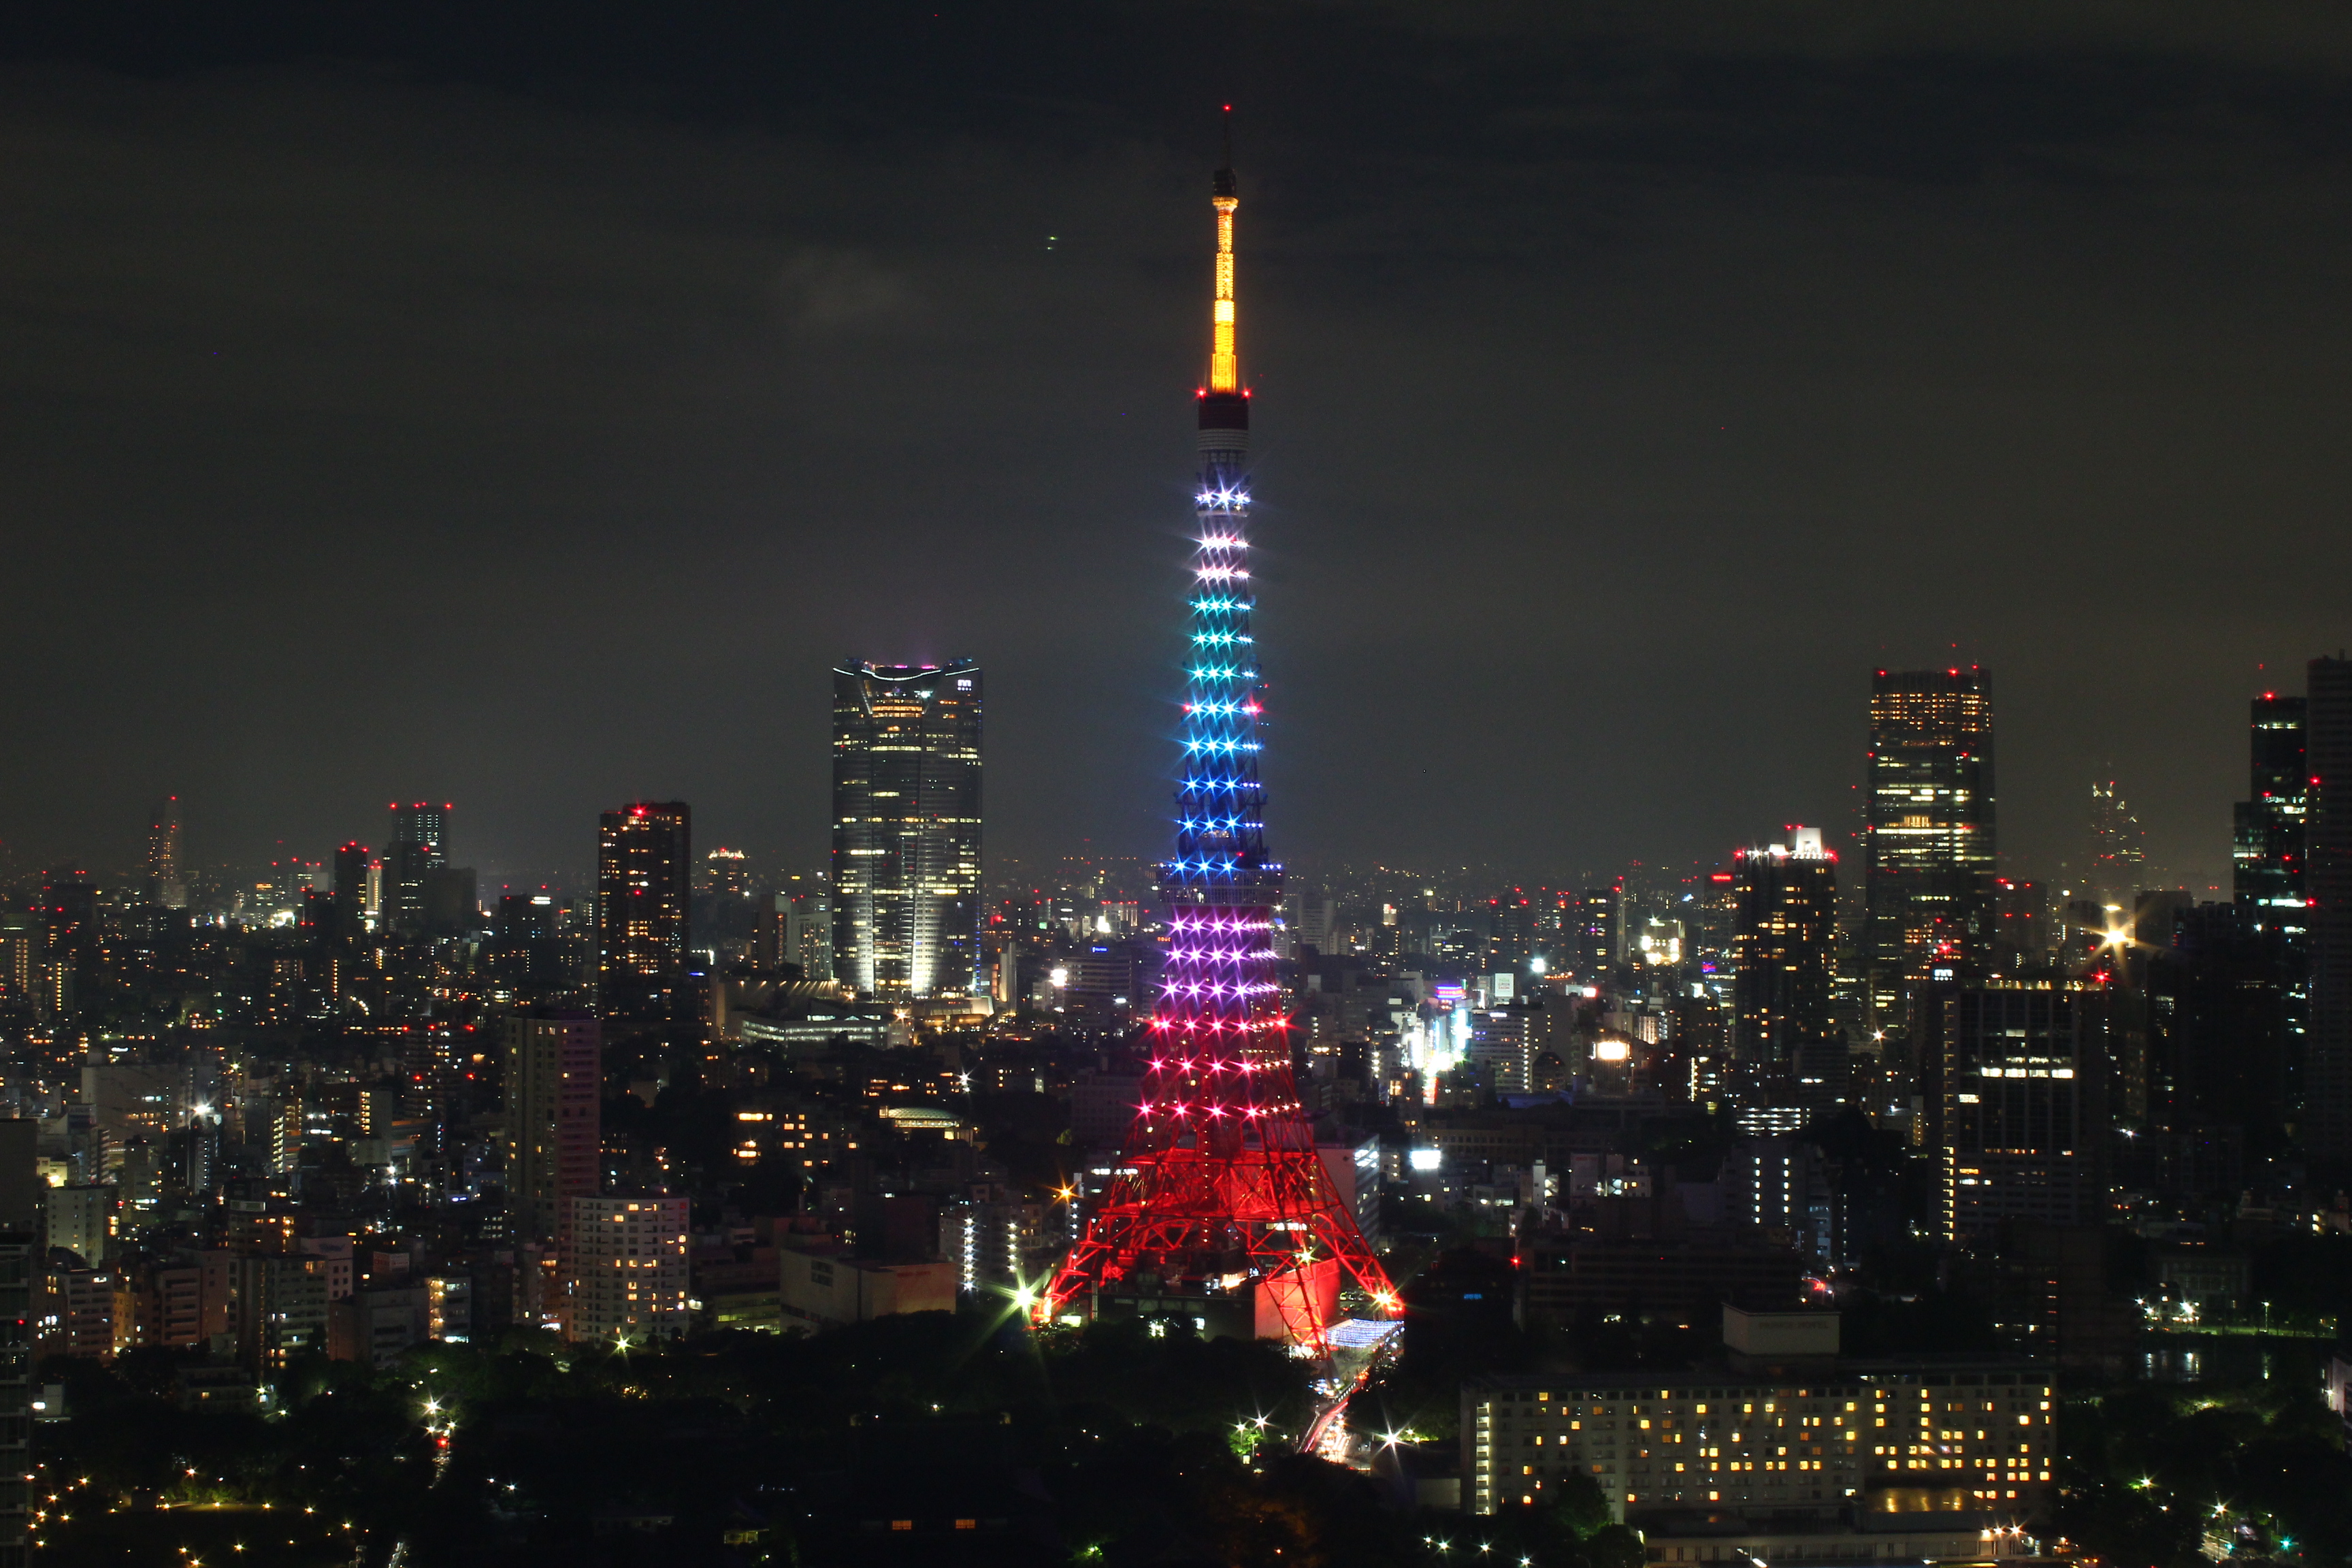 17年11月28日 火 東京タワーがレインボーカラーにライトアップ モダンラグジュアリーブランドcoachが色とりどりのホリデーコレクションの発売記念にイルミネーションを実施 コーチのプレスリリース